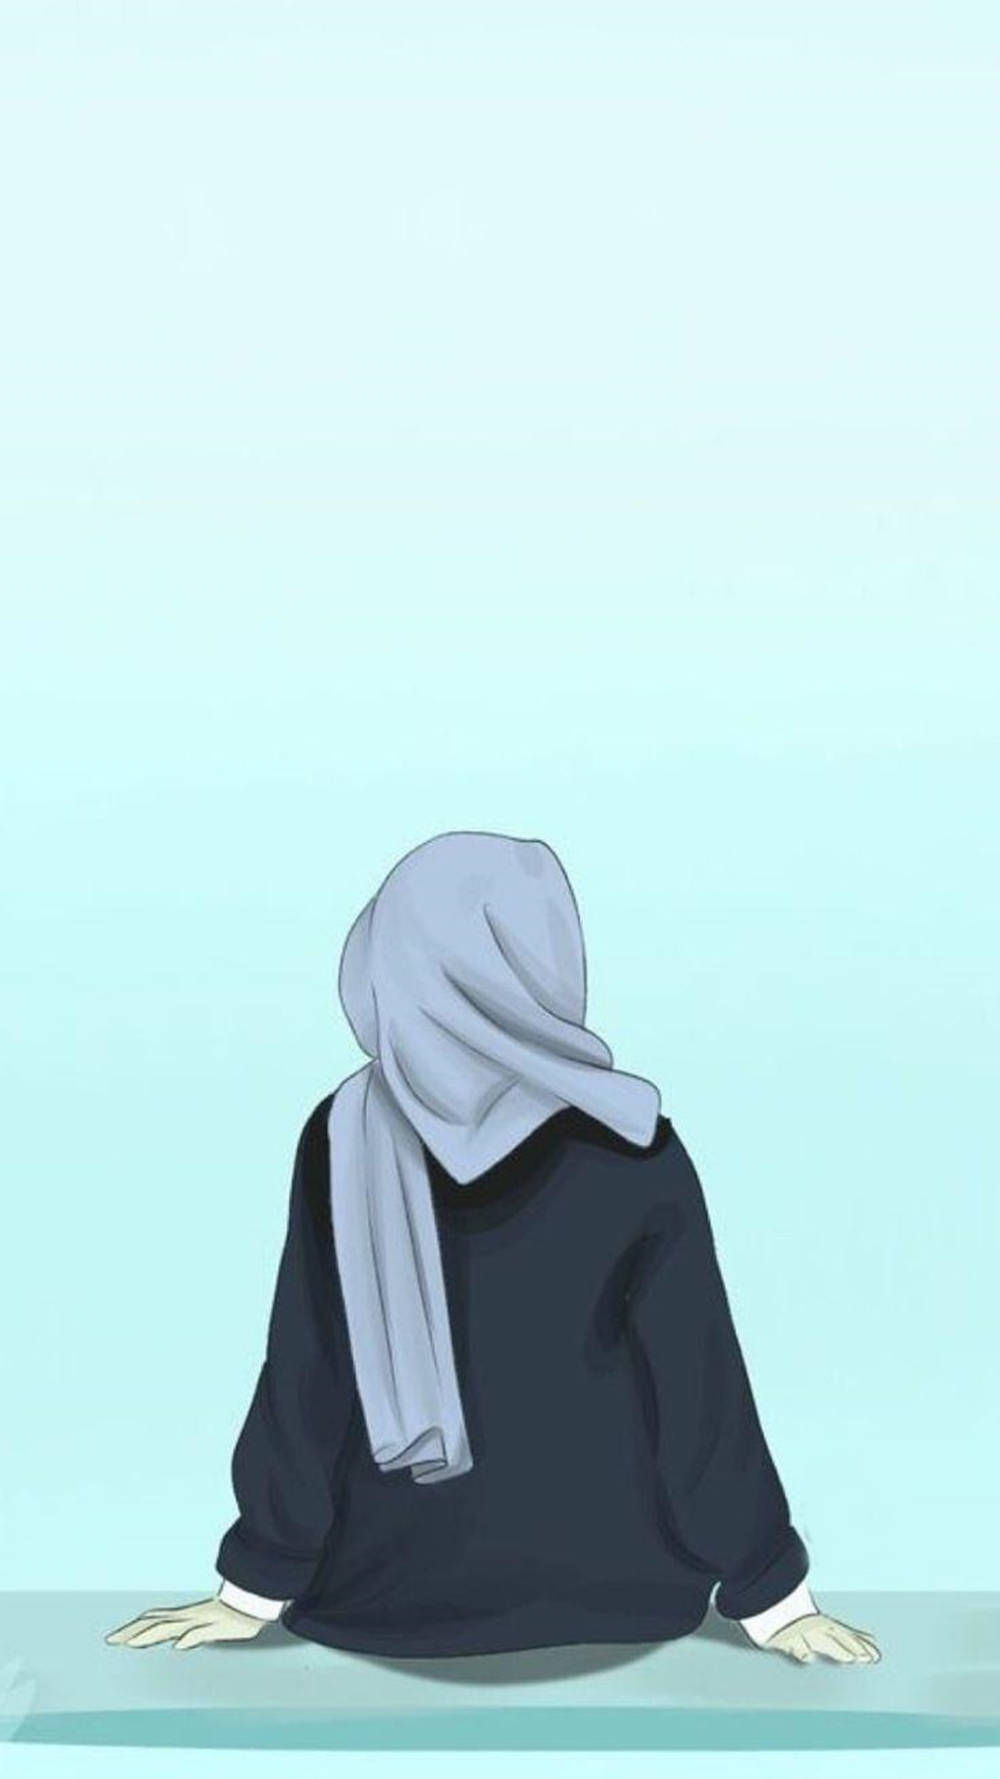 Hijabtjejblå Digital Illustration Wallpaper